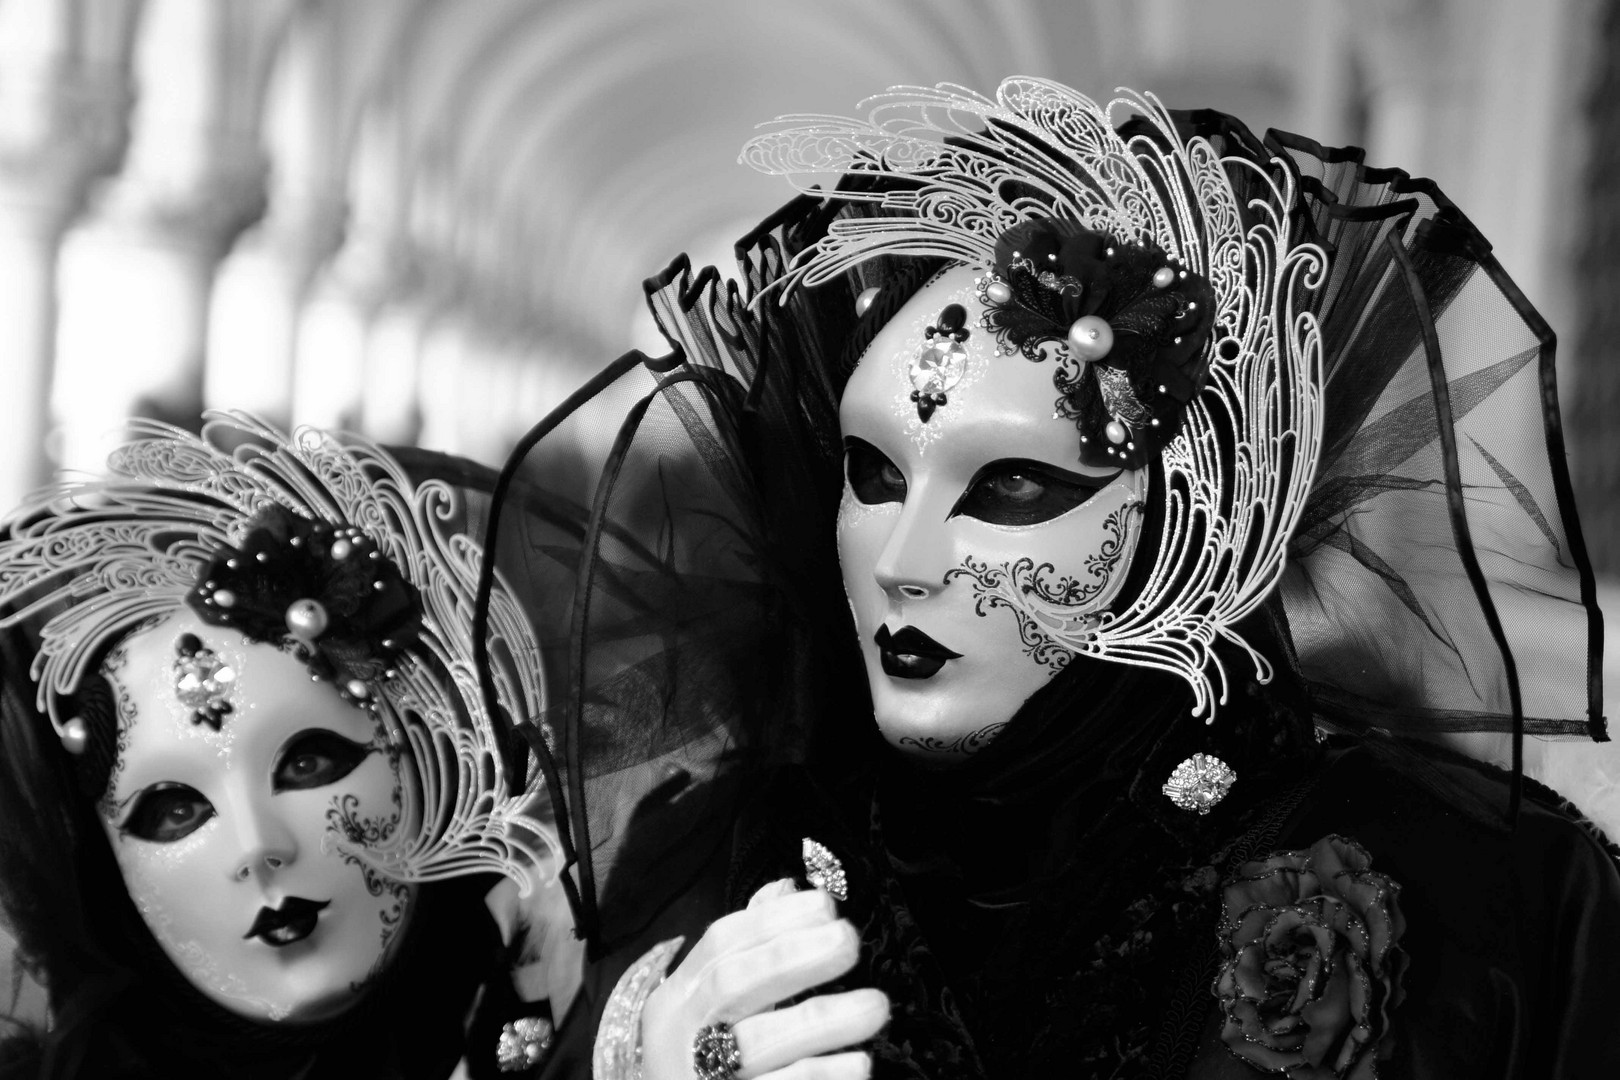 Masken schwarz-weiß Foto & Bild | europe, italy, vatican city, s marino,  italy Bilder auf fotocommunity